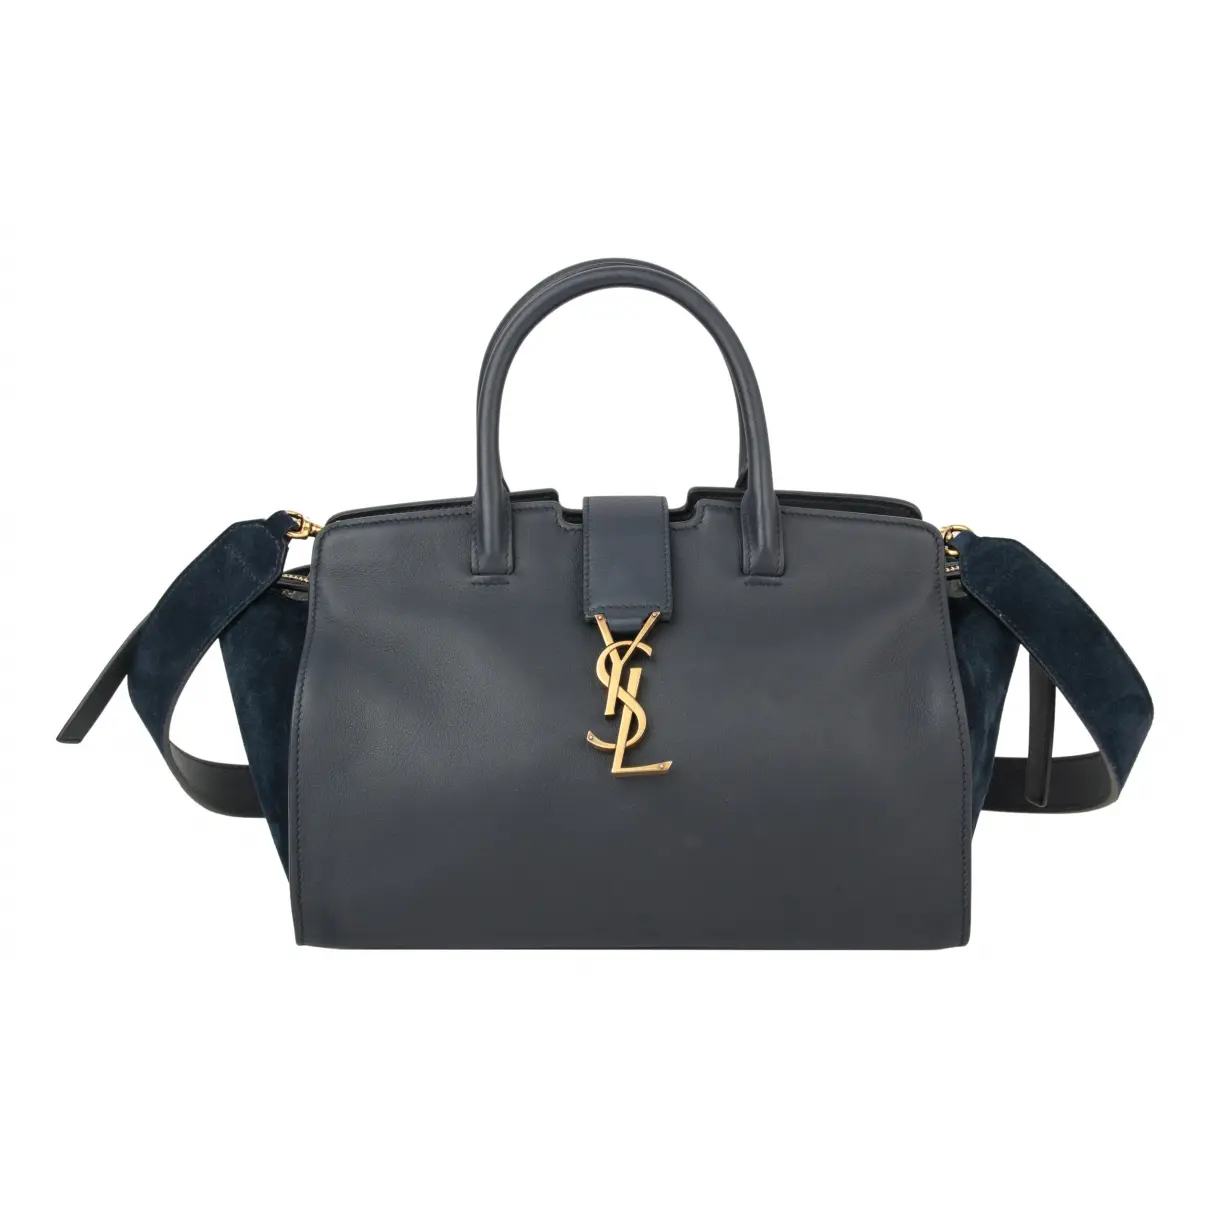 Cabas Toy leather handbag Saint Laurent